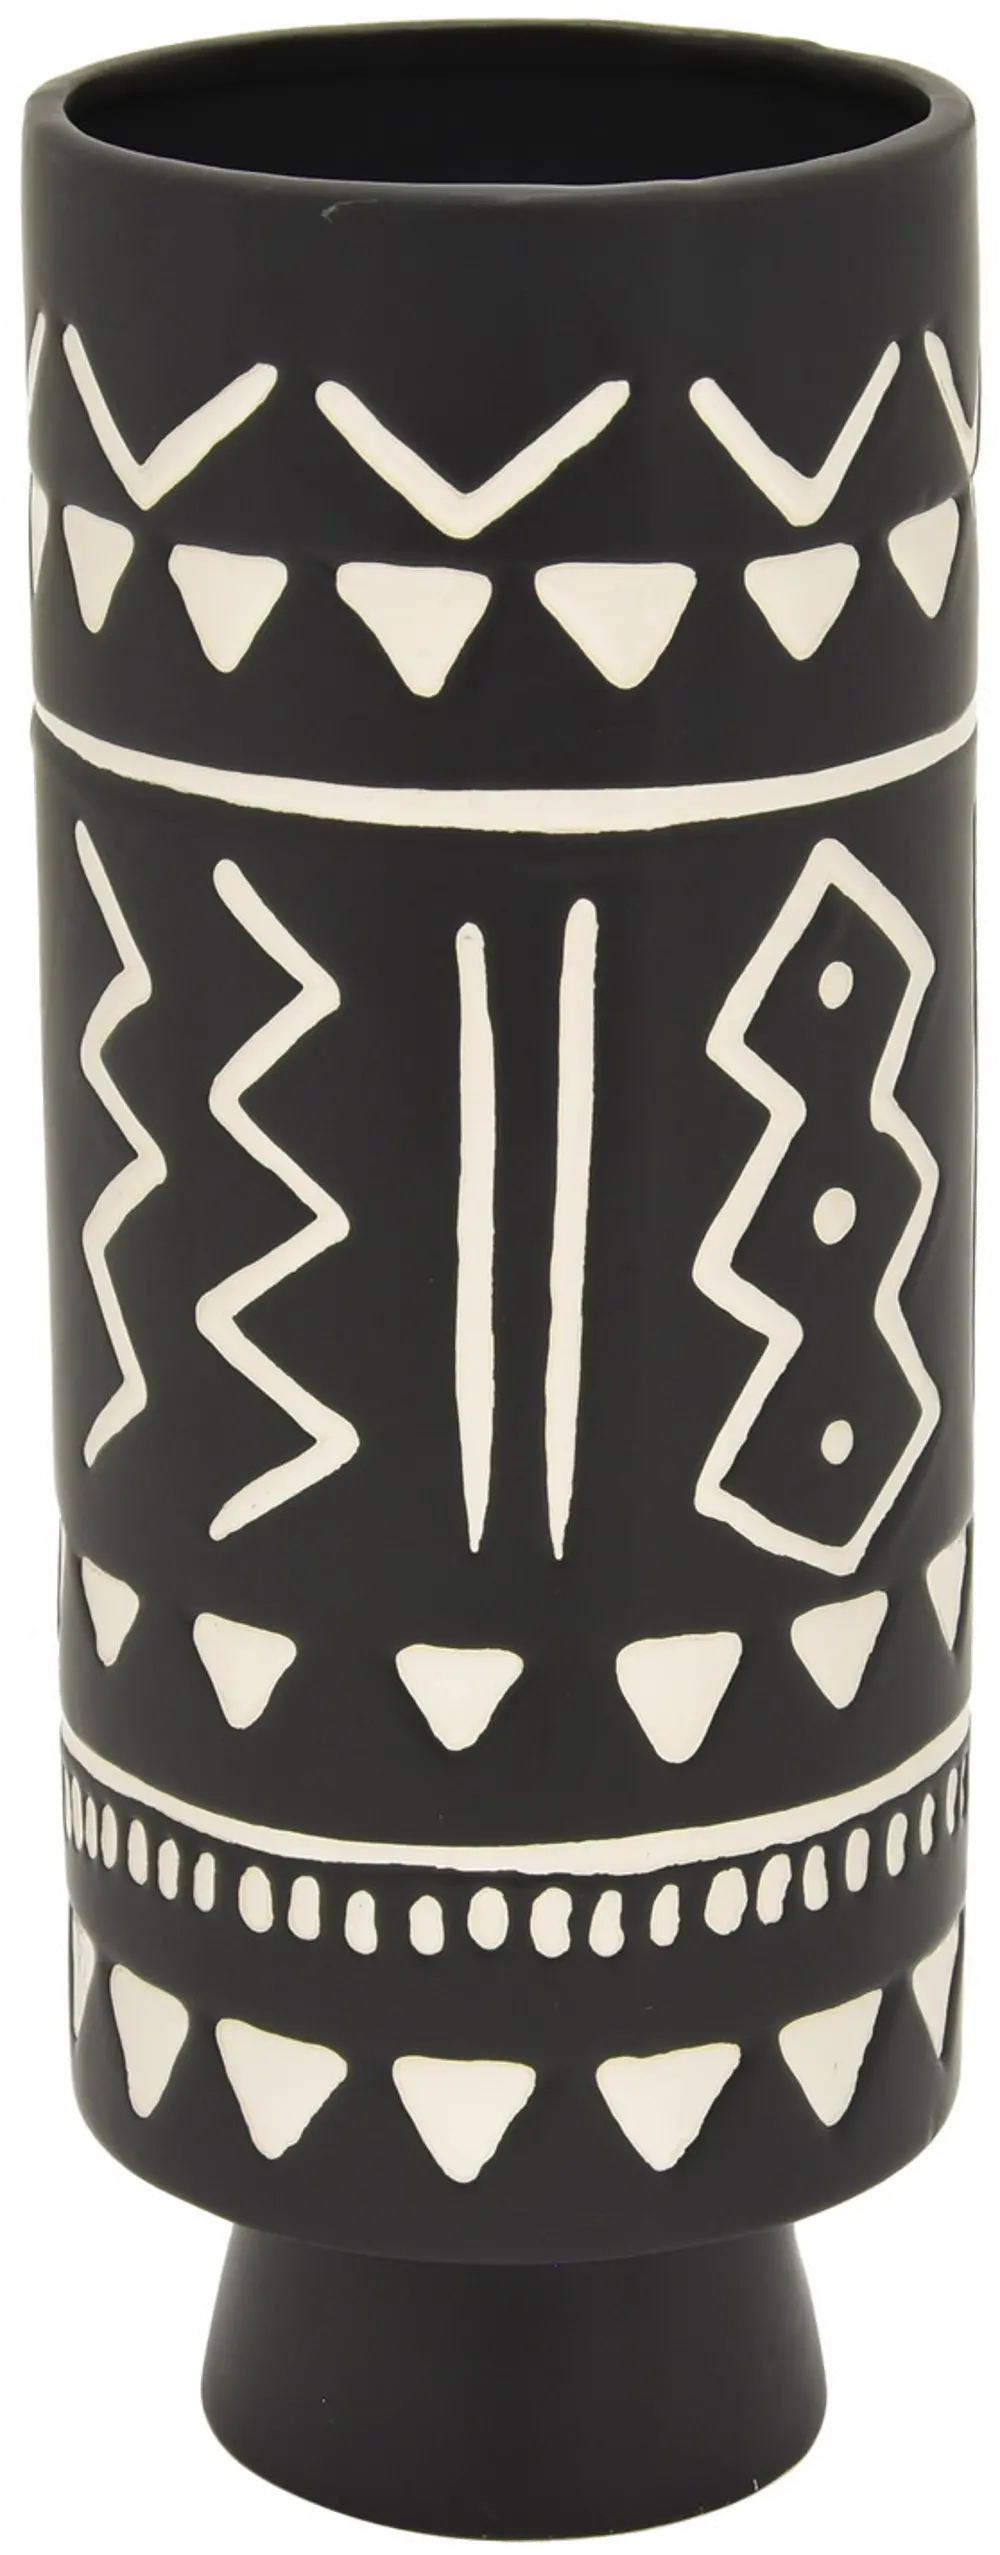 11 Inch Black and White Ceramic Vase-1